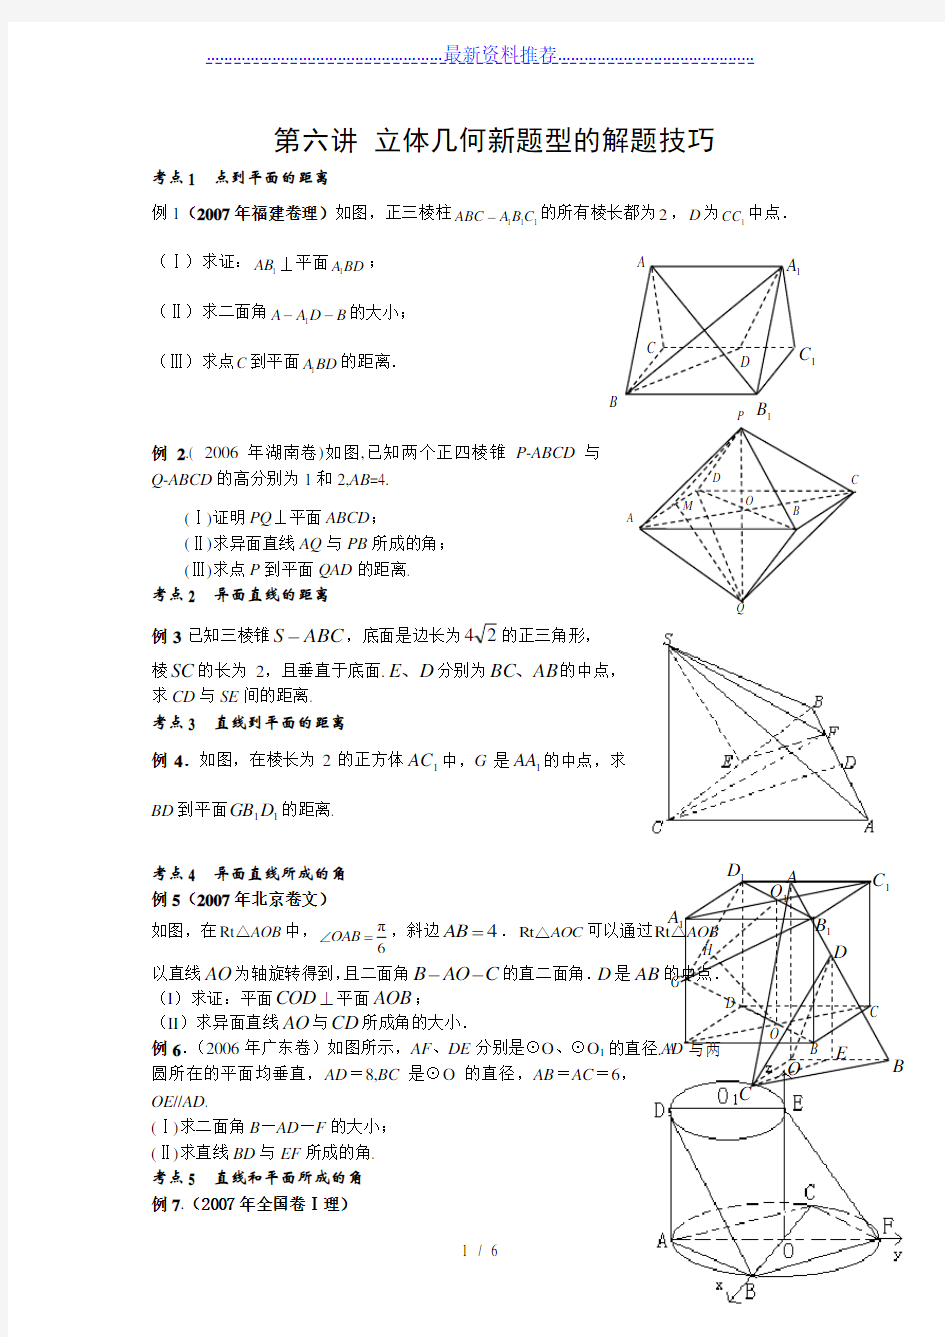 立体几何题型的解题技巧适合总结提高用